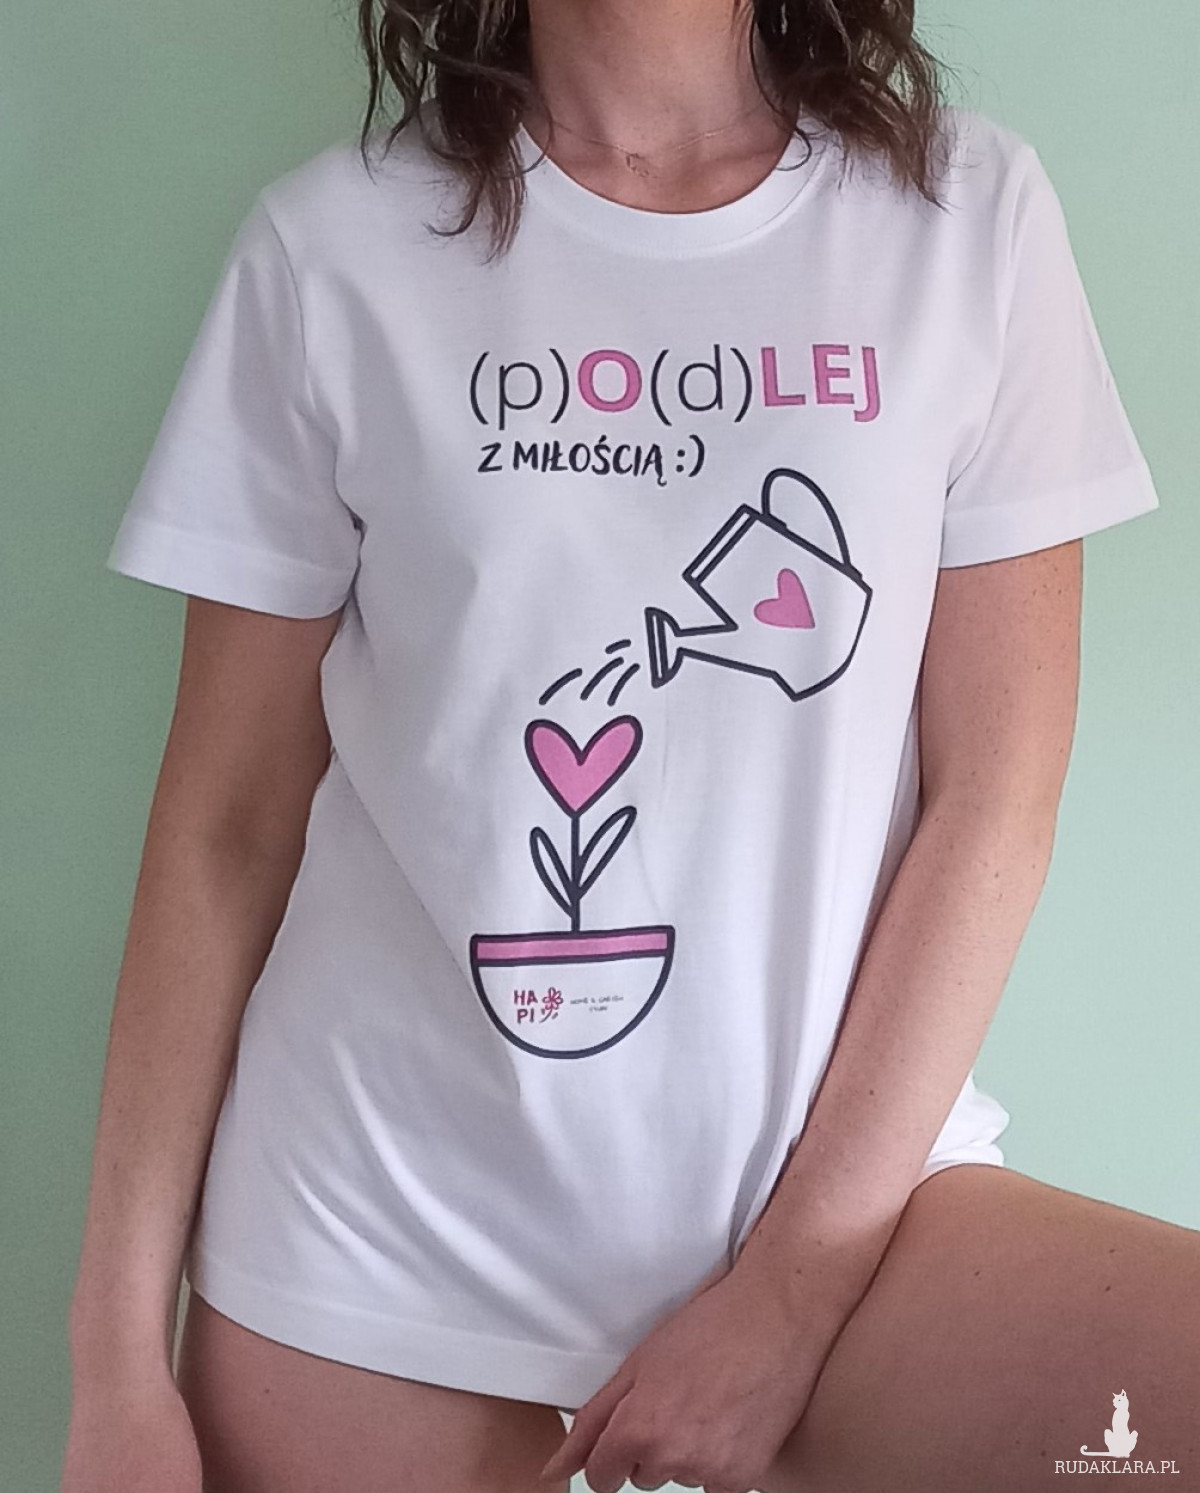 Koszulka T-shirt damski "podlej z miłością". Idealny prezent na dzień Mamy